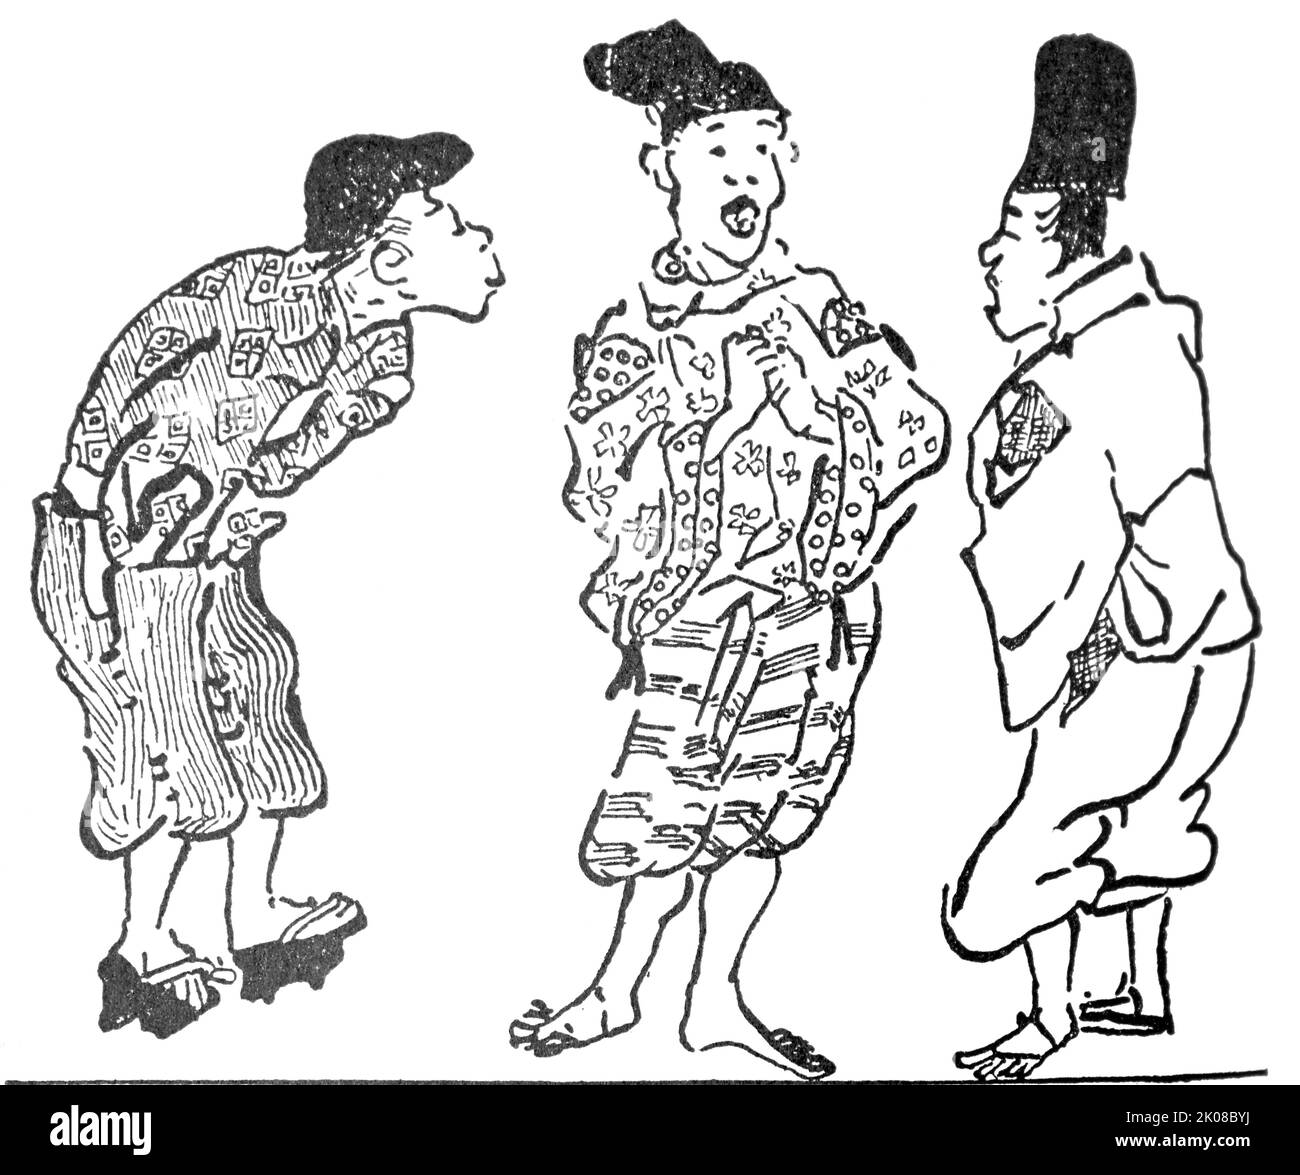 Die Plebs in der Heian-Zeit. Nach der Ban Dainagon-Schriftrolle, c1170. Ban Dainagon Ekotoba ist ein Emakimono (Handscrollgemälde) aus dem späten 12.. Jahrhundert, das die Ereignisse der Otemmon-Verschwörung, ein Ereignis der frühen Heian-Zeit Japans, darstellt Stockfoto